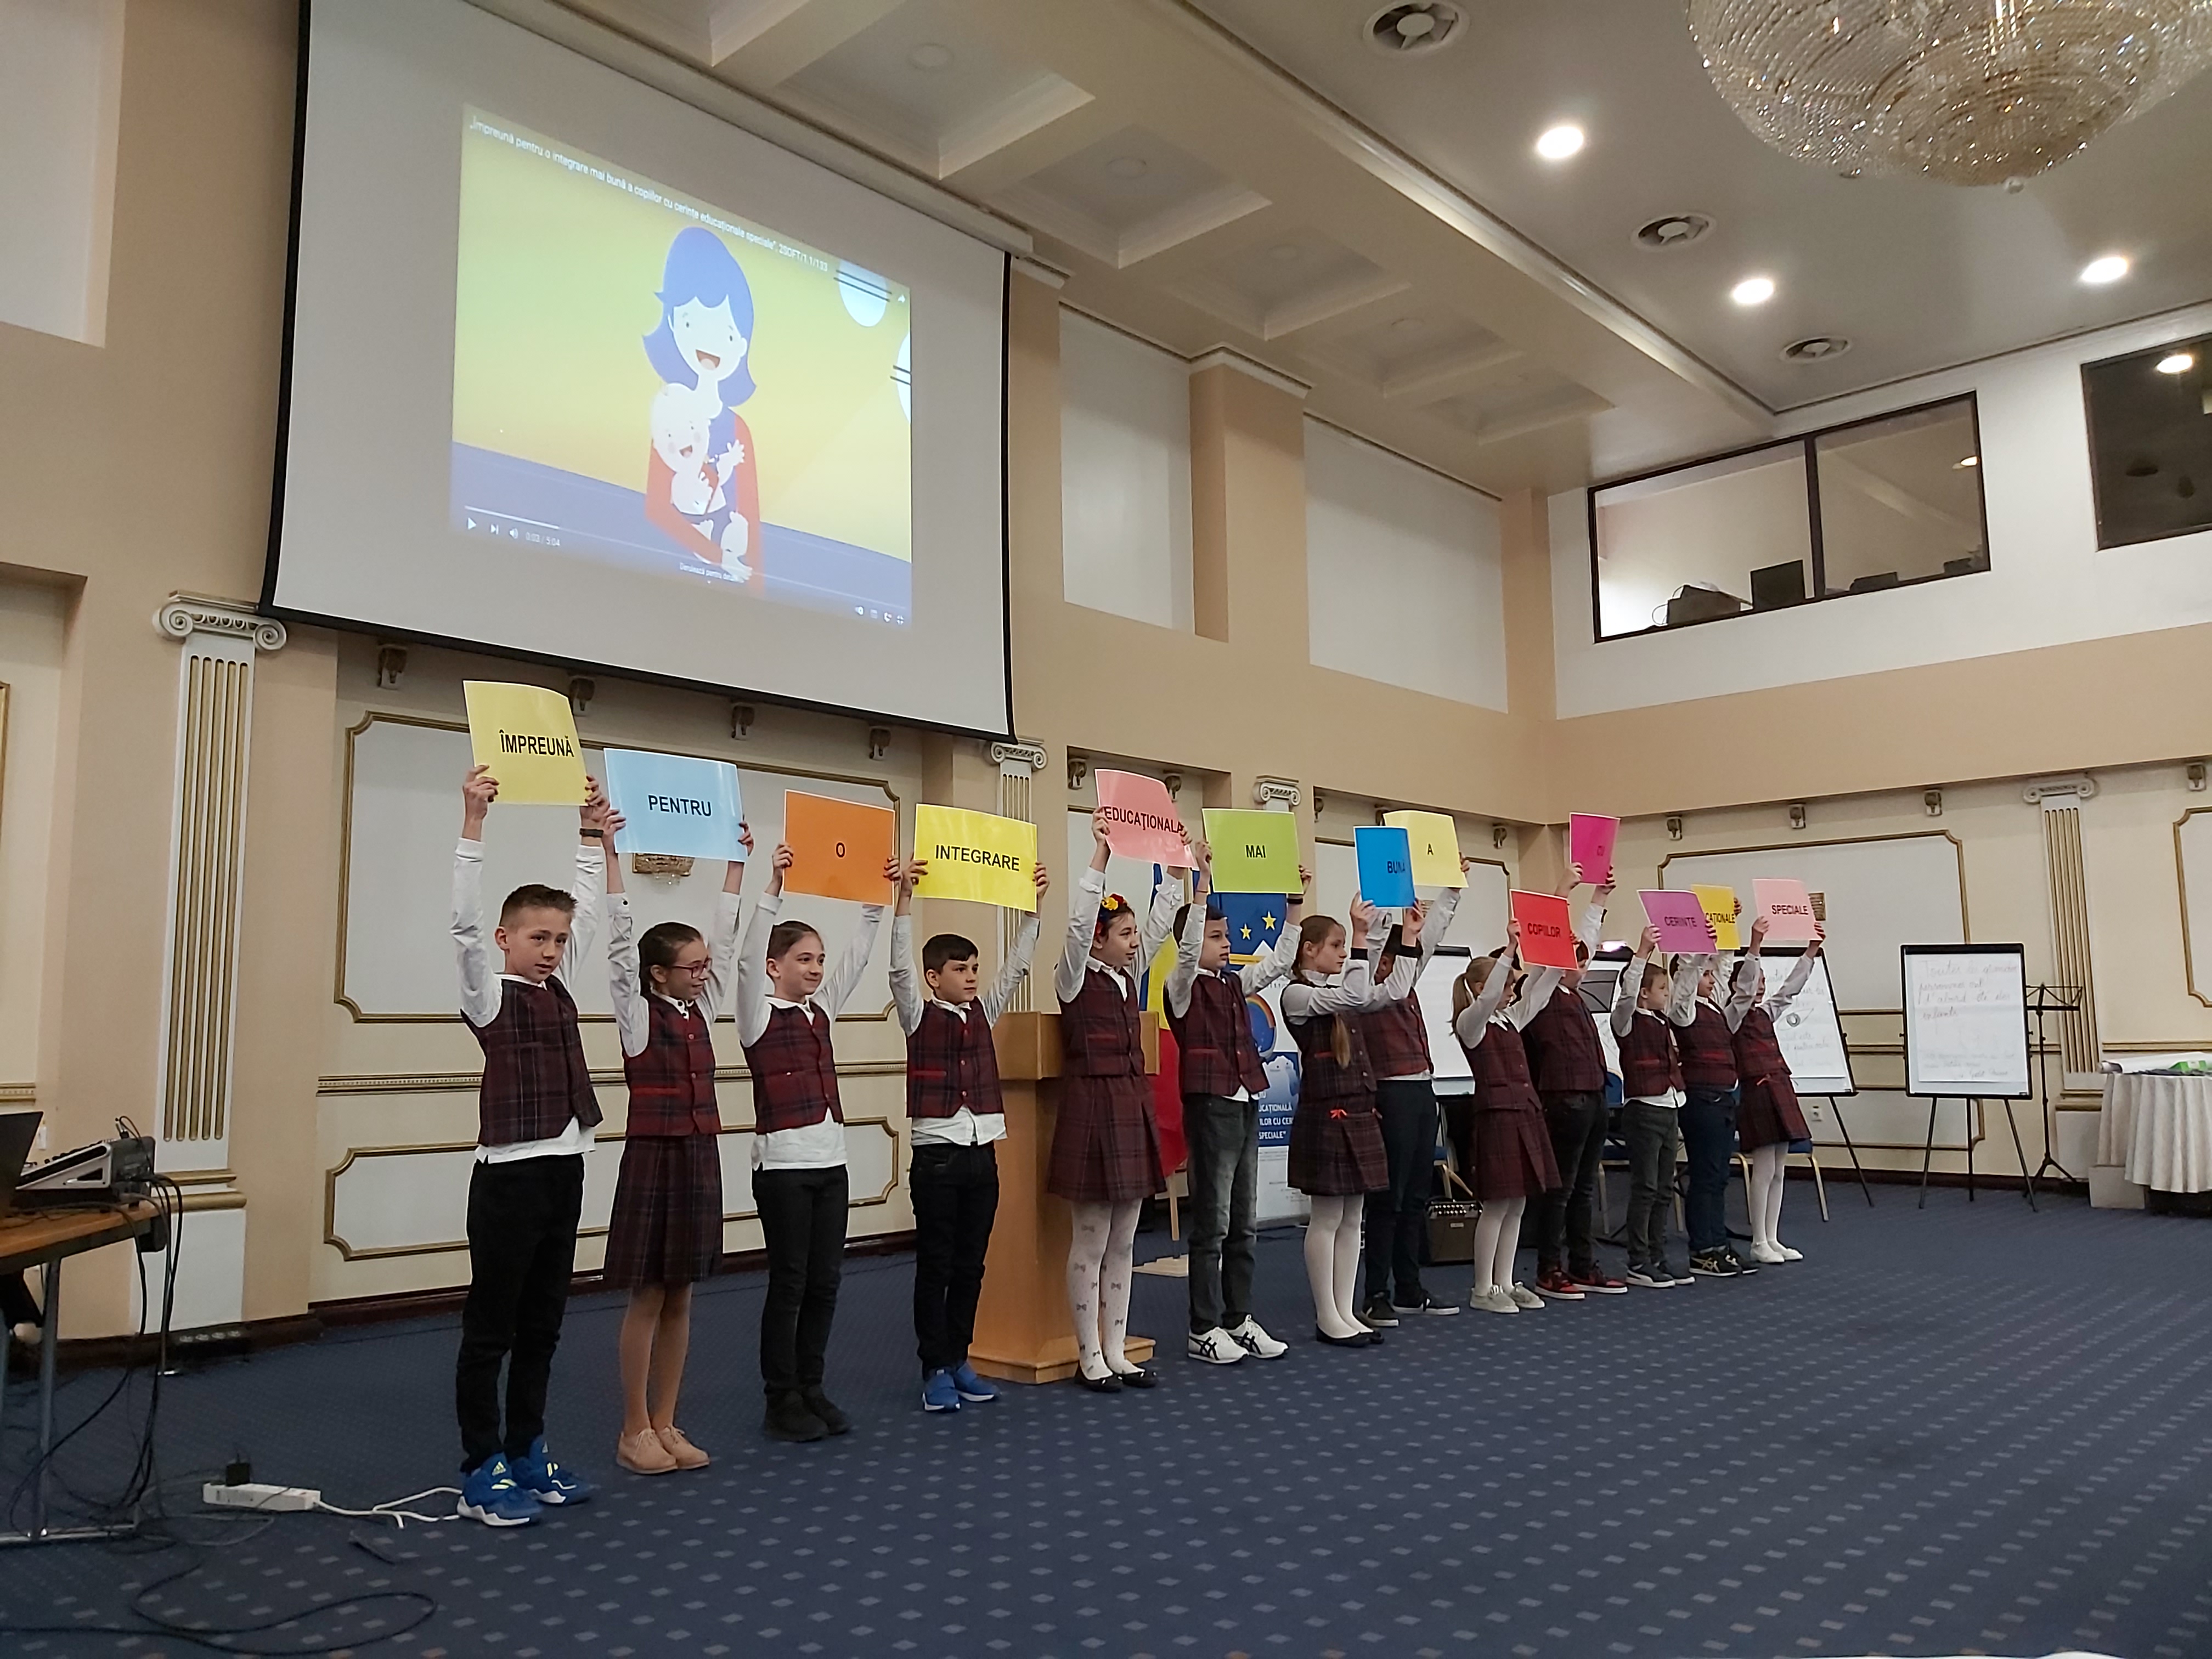 Proiect transfrontalier " Împreună pentru o integrare educațională mai bună a copiilor cu cerințe educaționale speciale" implimentat de Inspectoratul Școlar Județean Botoșani, România în parteneriat cu Direcția Învățământ, Tineret și Sport, mun. Bălți, Republica Moldova